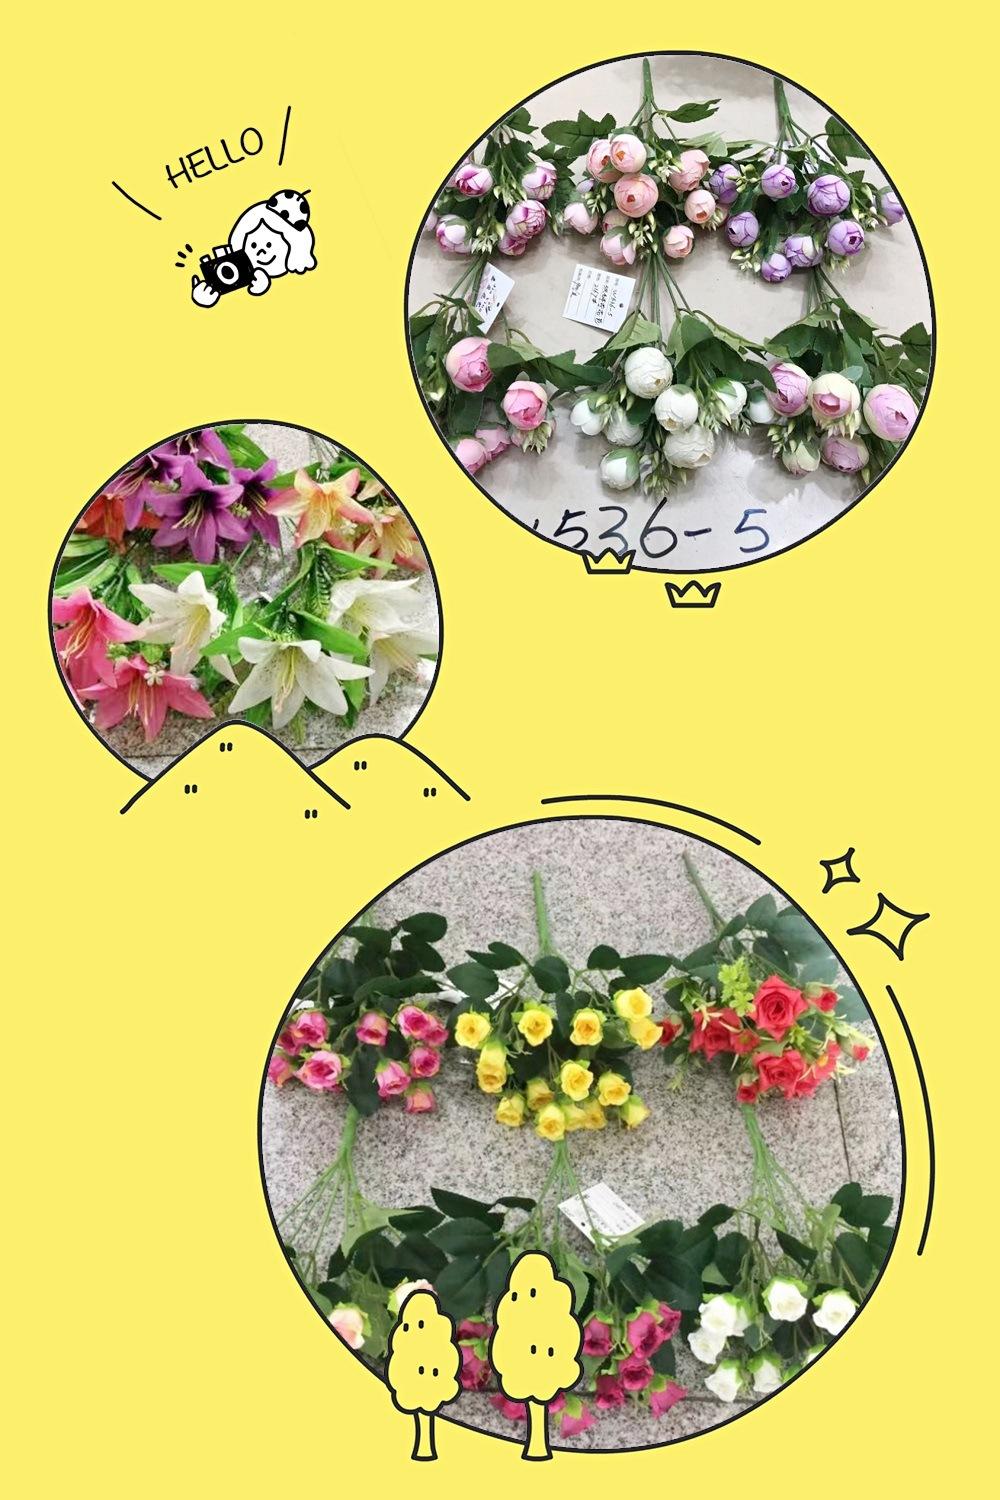 Handmade Mini Artificial Wedding Flower Bouquet